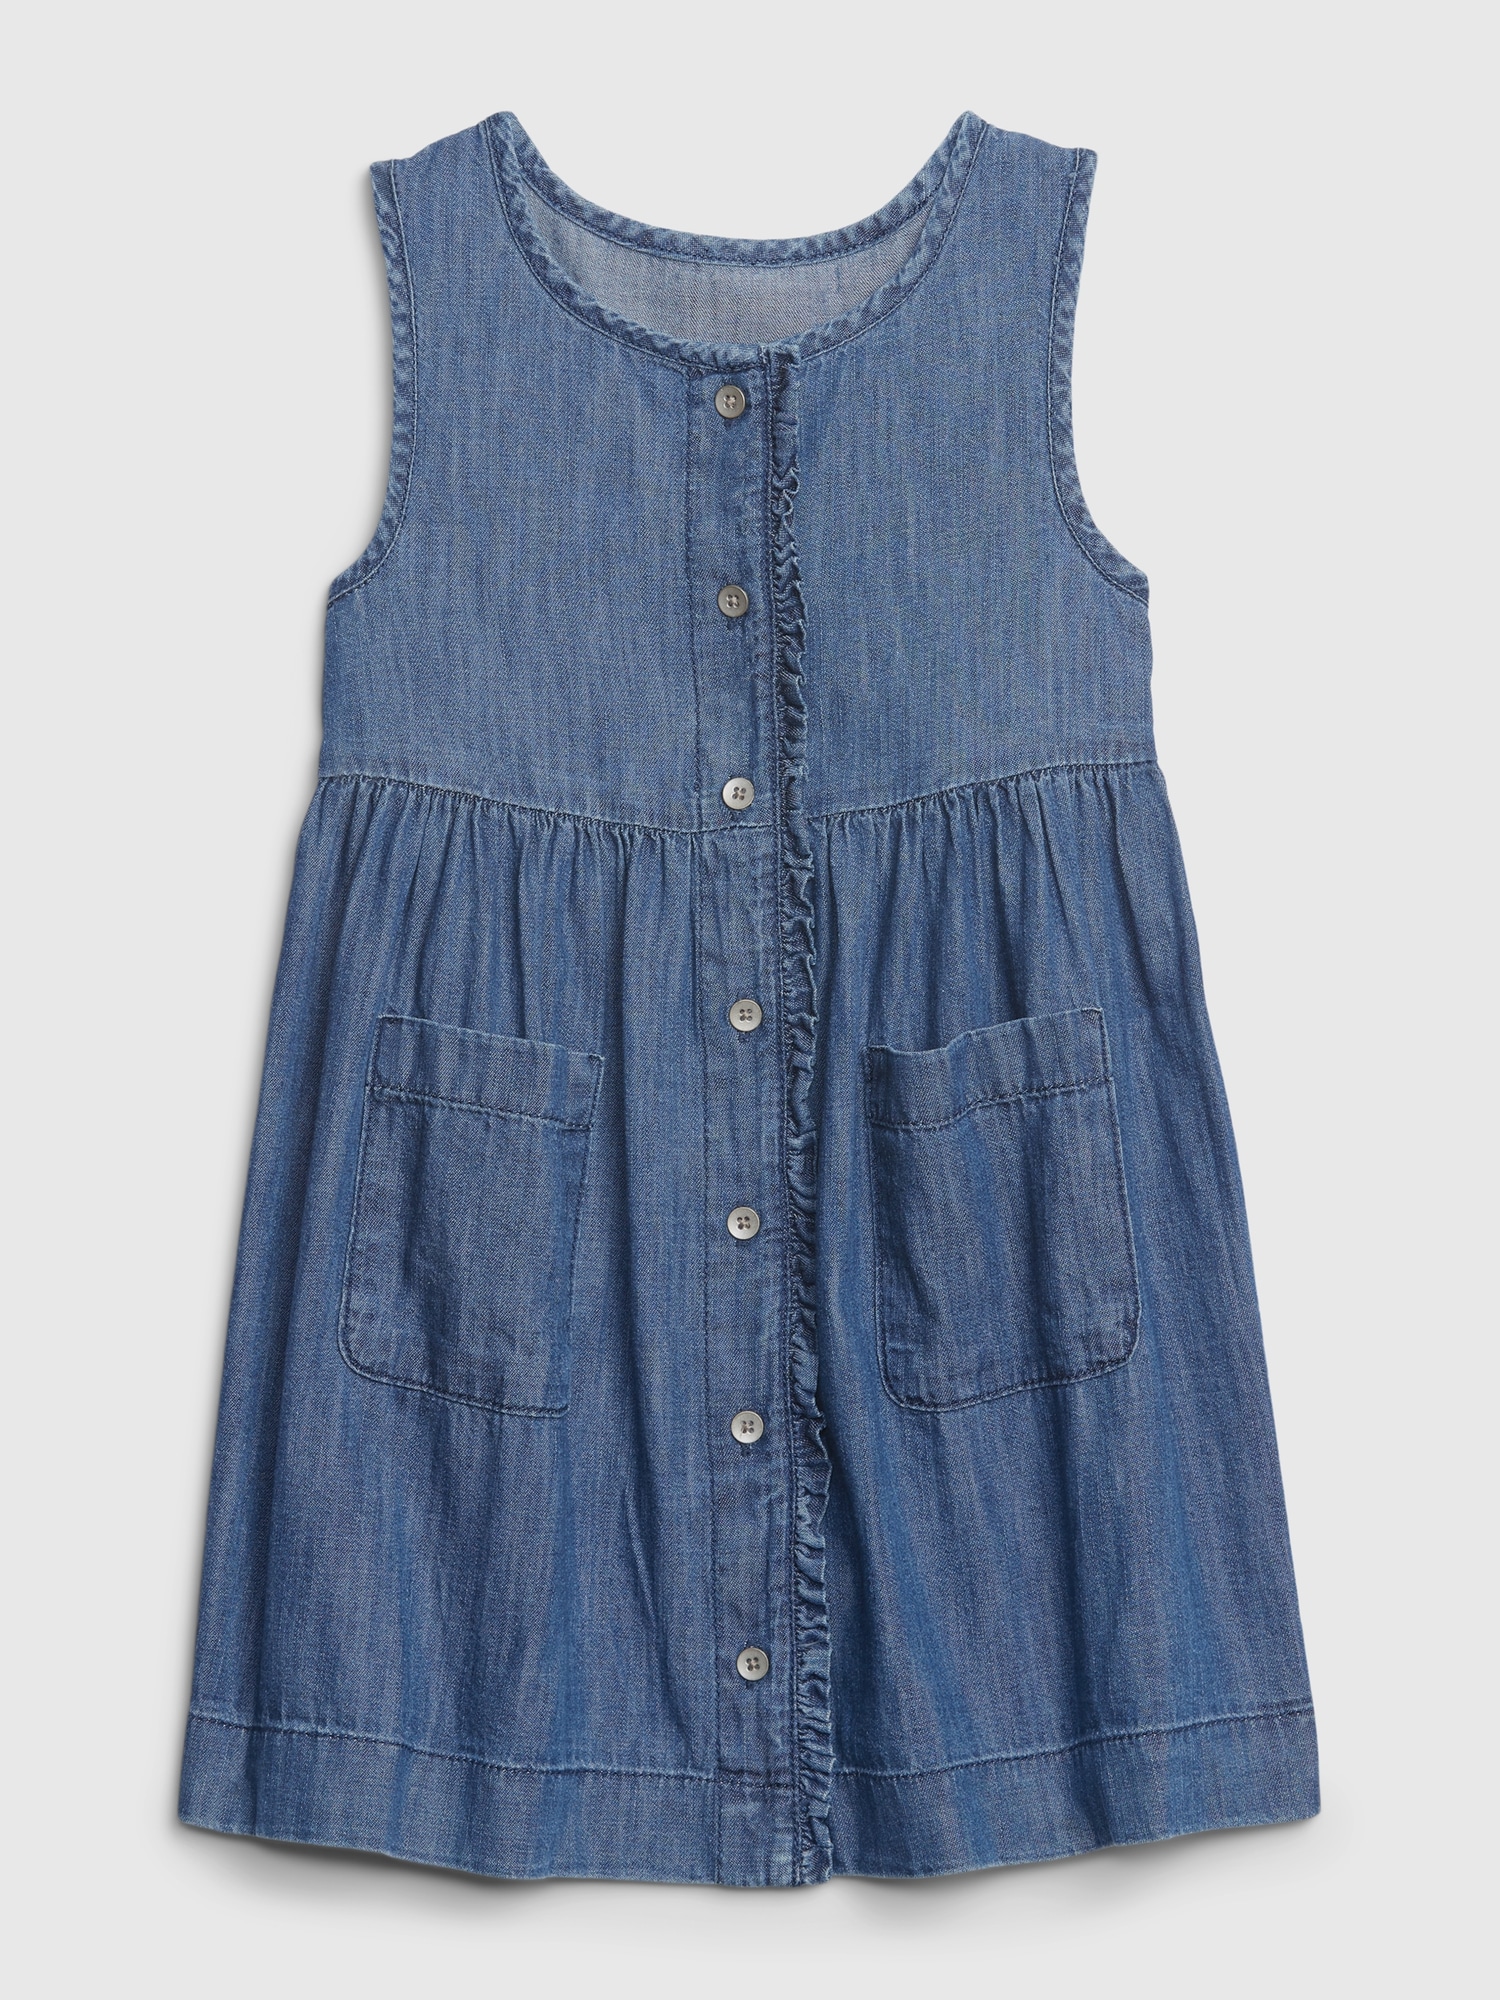 Polo Ralph Lauren Toddler Girls Cotton Denim Overall Dress - Macy's